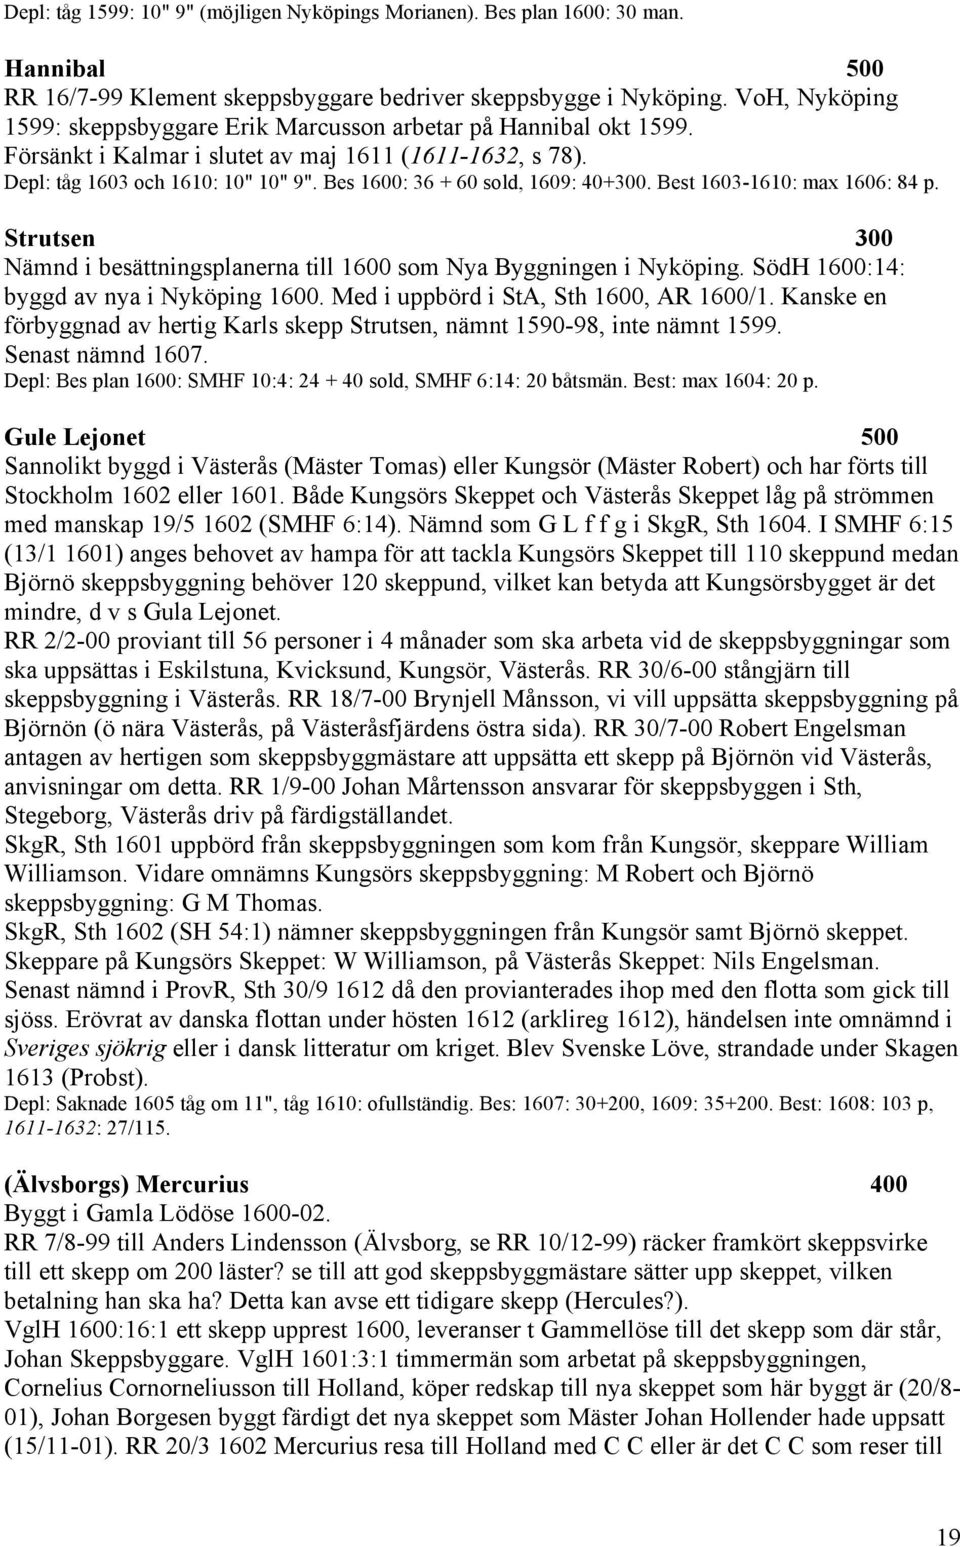 Bes 1600: 36 + 60 sold, 1609: 40+300. Best 1603-1610: max 1606: 84 p. Strutsen 300 Nämnd i besättningsplanerna till 1600 som Nya Byggningen i Nyköping. SödH 1600:14: byggd av nya i Nyköping 1600.